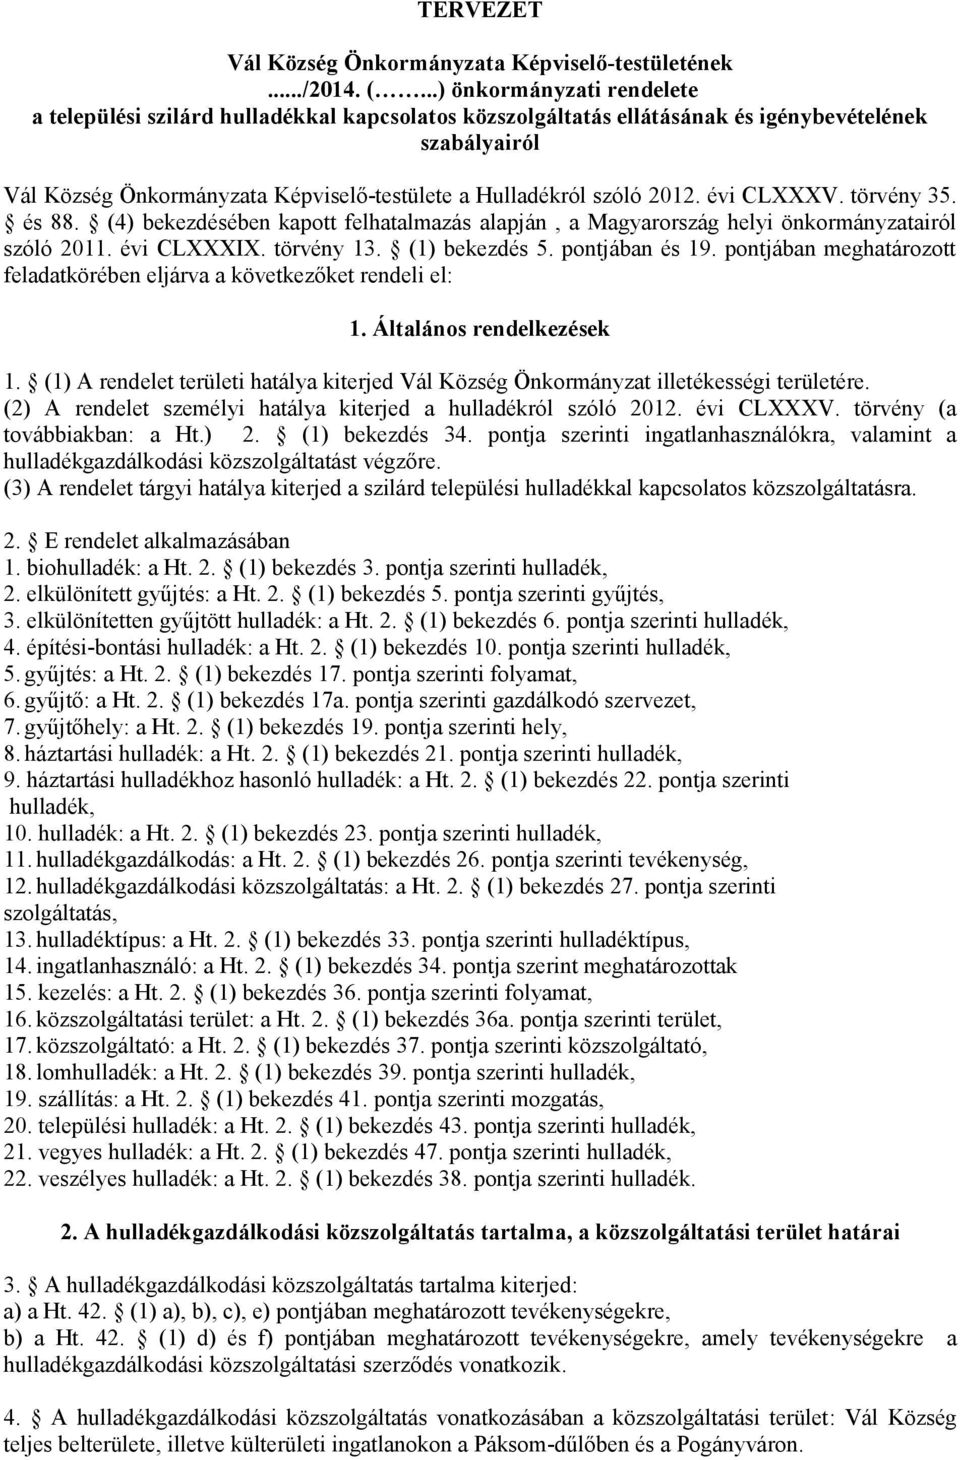 2012. évi CLXXXV. törvény 35. és 88. (4) bekezdésében kapott felhatalmazás alapján, a Magyarország helyi önkormányzatairól szóló 2011. évi CLXXXIX. törvény 13. (1) bekezdés 5. pontjában és 19.